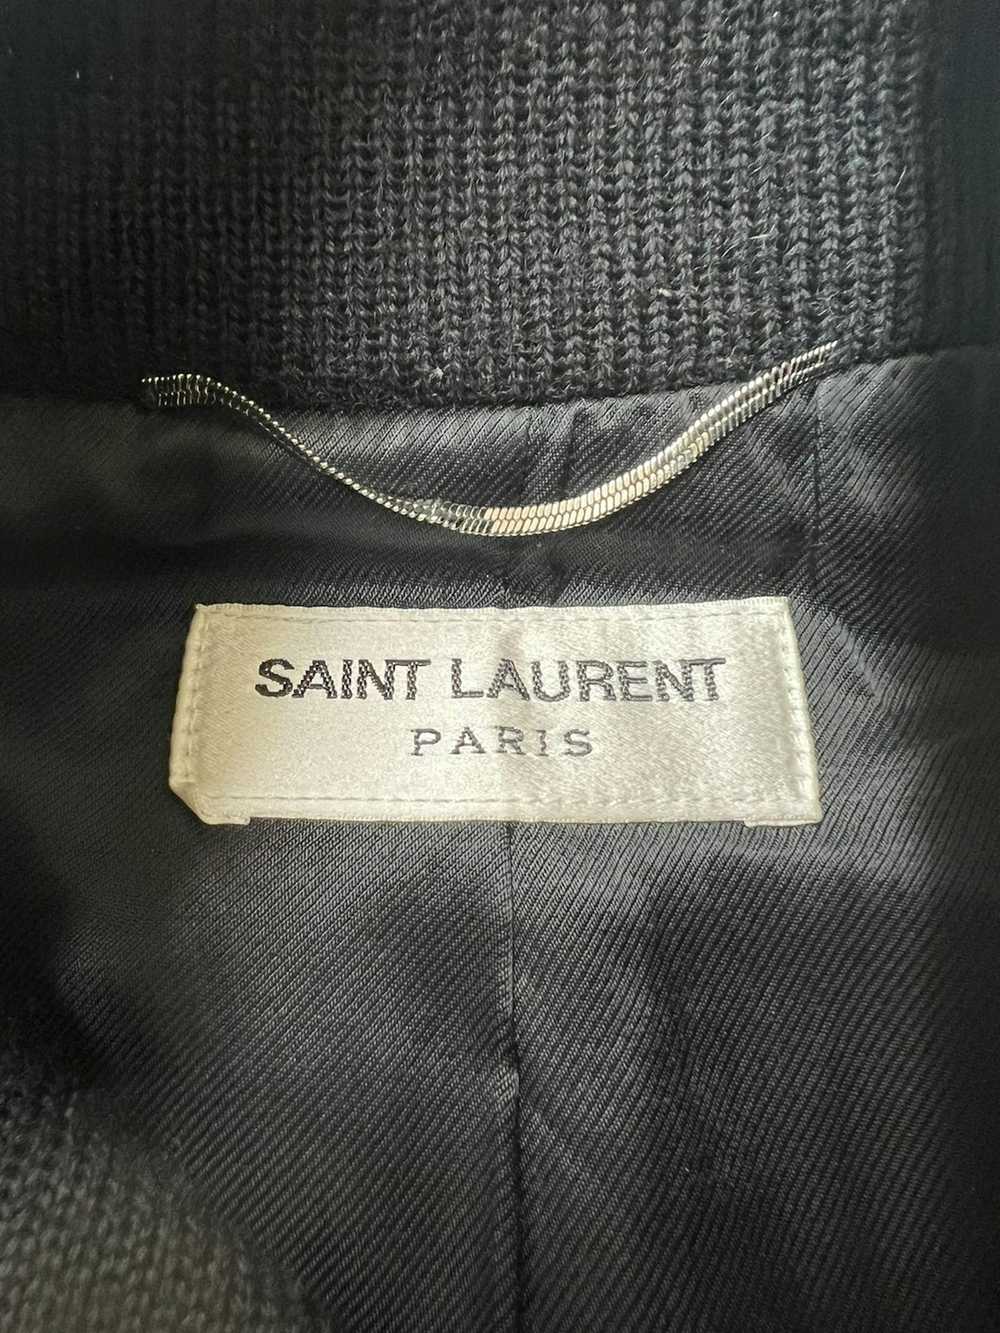 Saint Laurent Paris × Yves Saint Laurent YSL Sain… - image 3